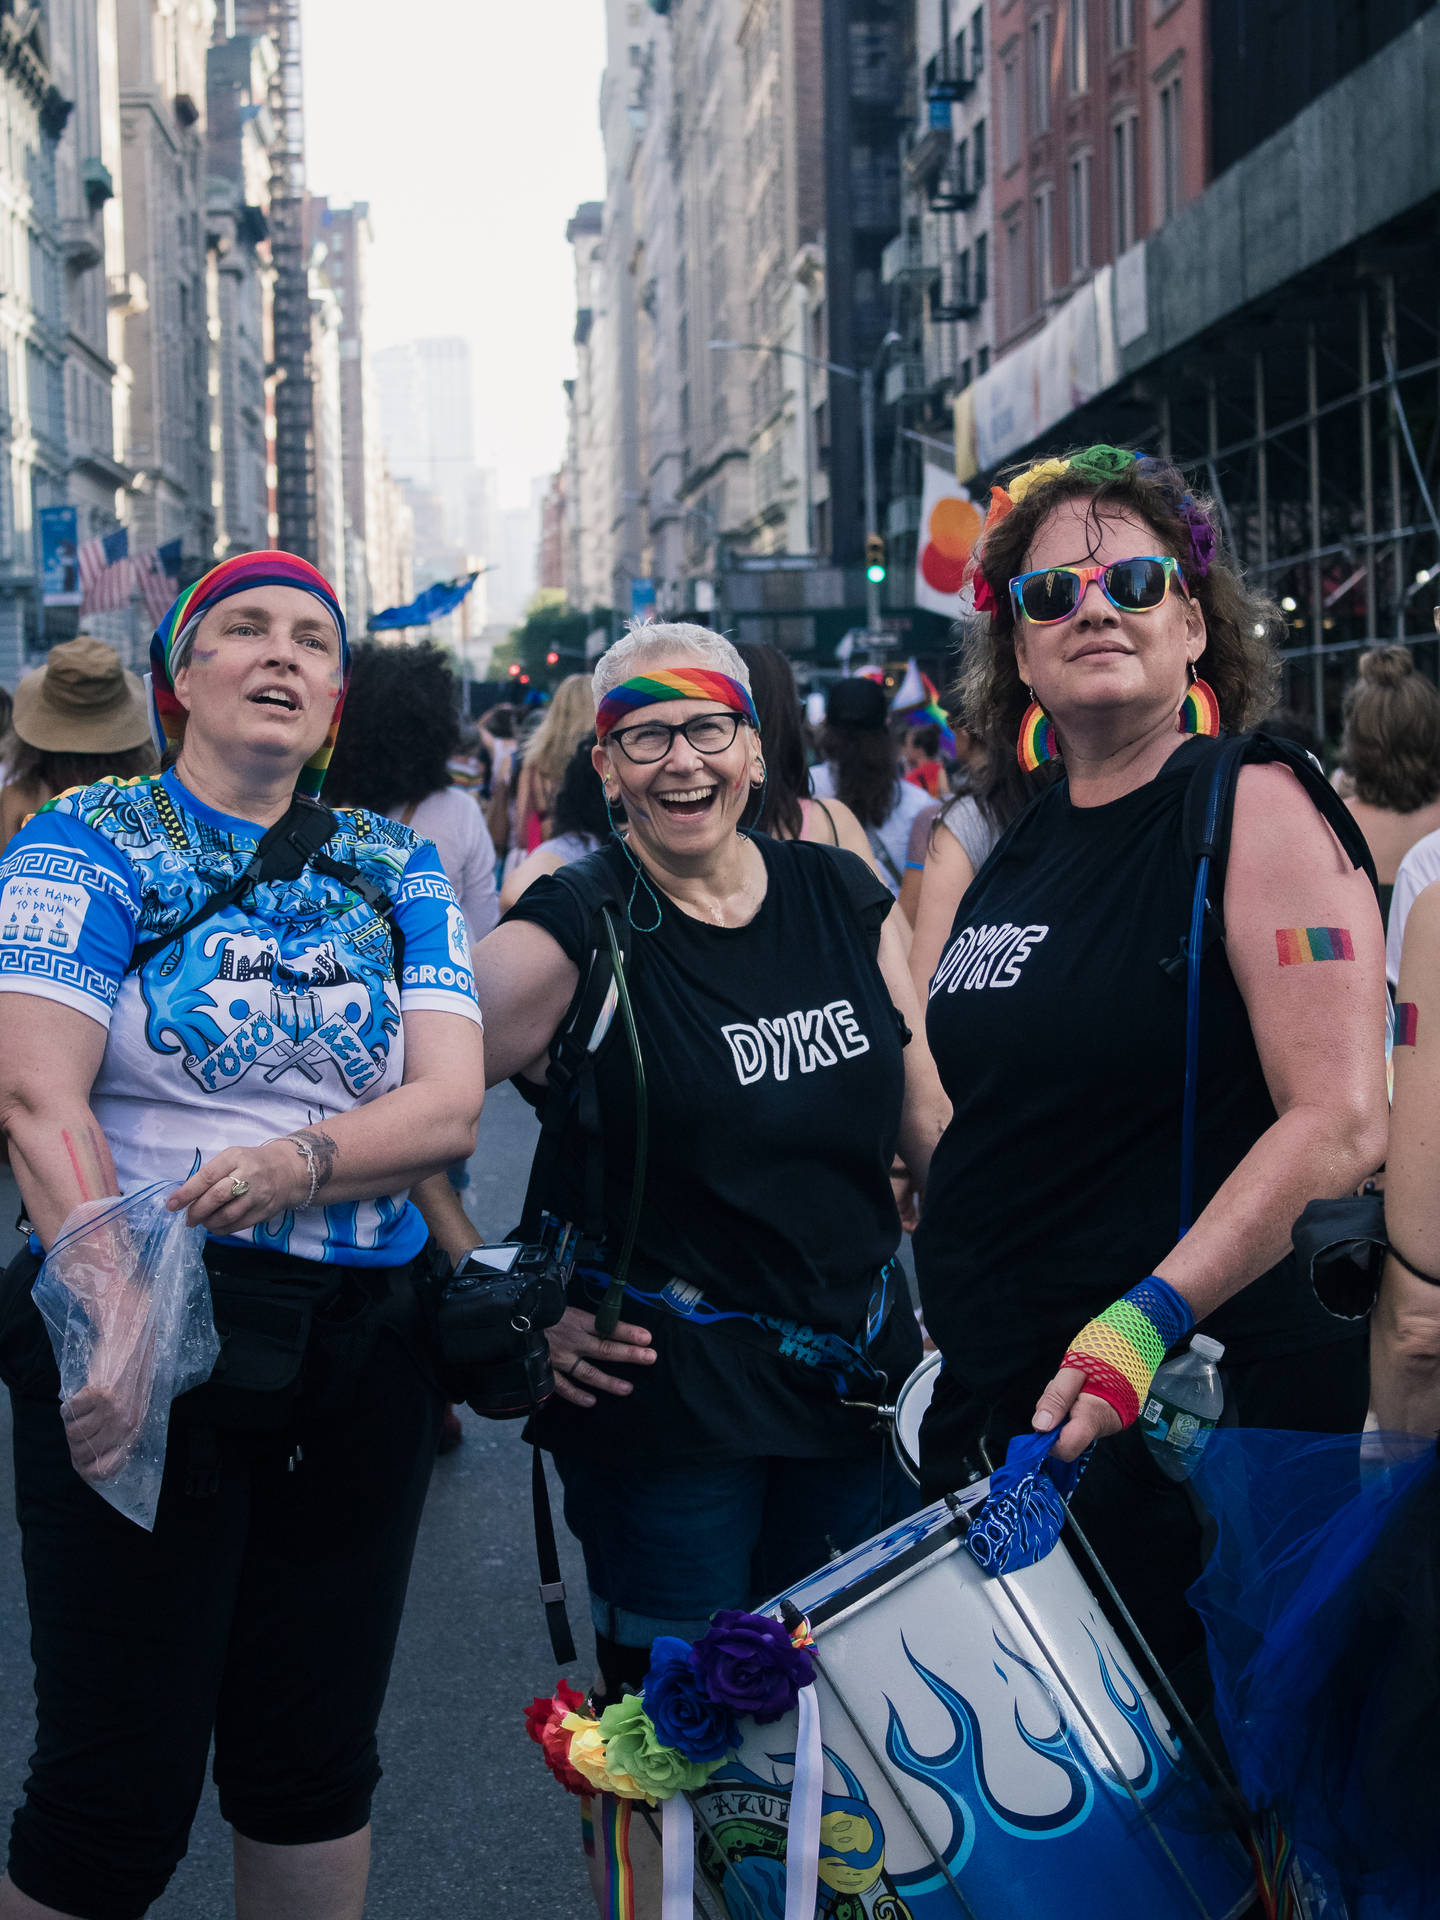 Lesbian Group In Street